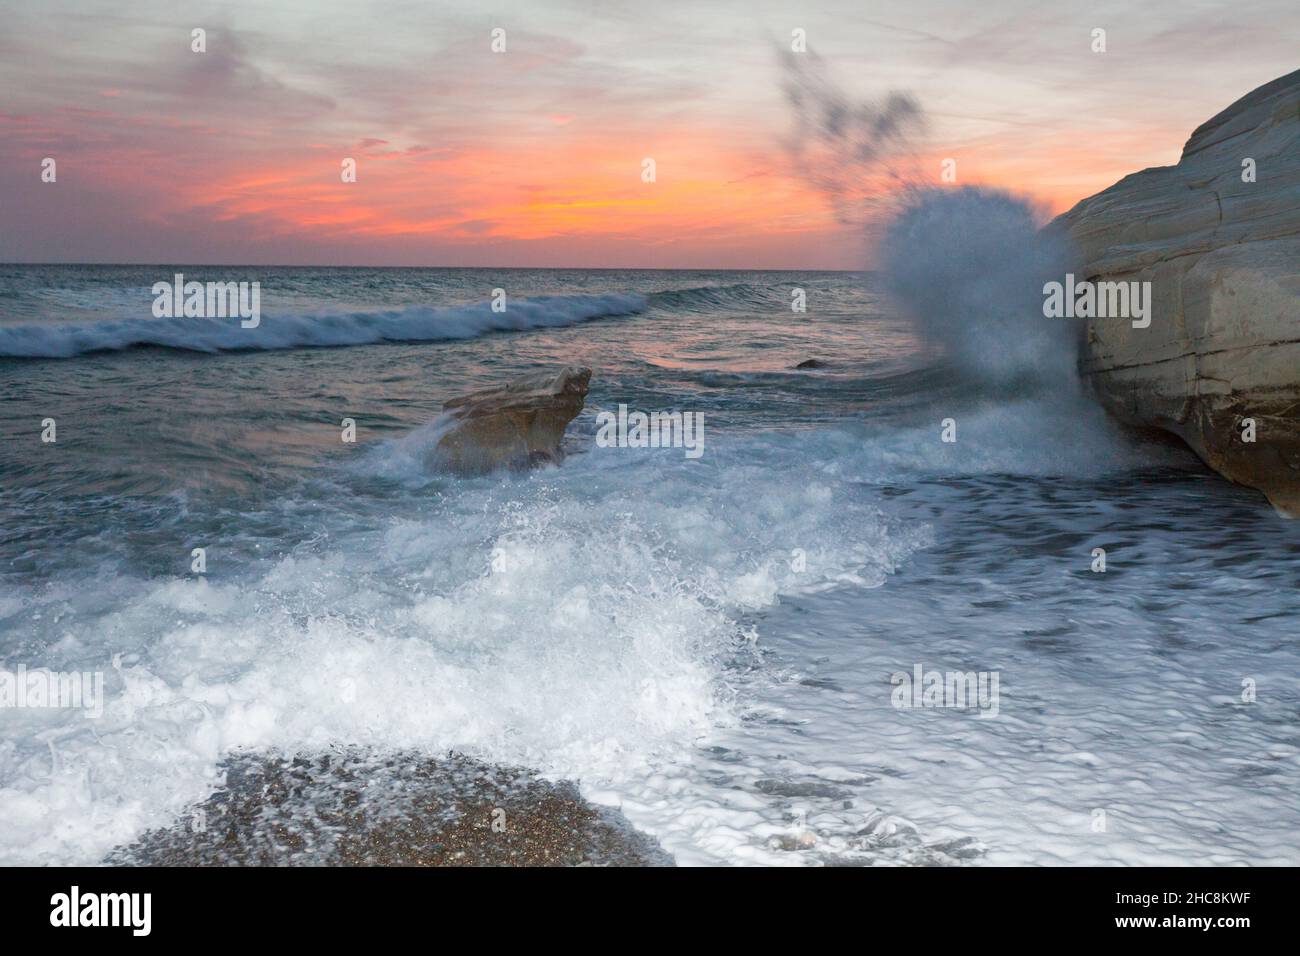 Wellen krachen an der felsigen Küste, Südküste neben Paphos, nach Sonnenuntergang, Insel Zypern, östliches Mittelmeer Stockfoto